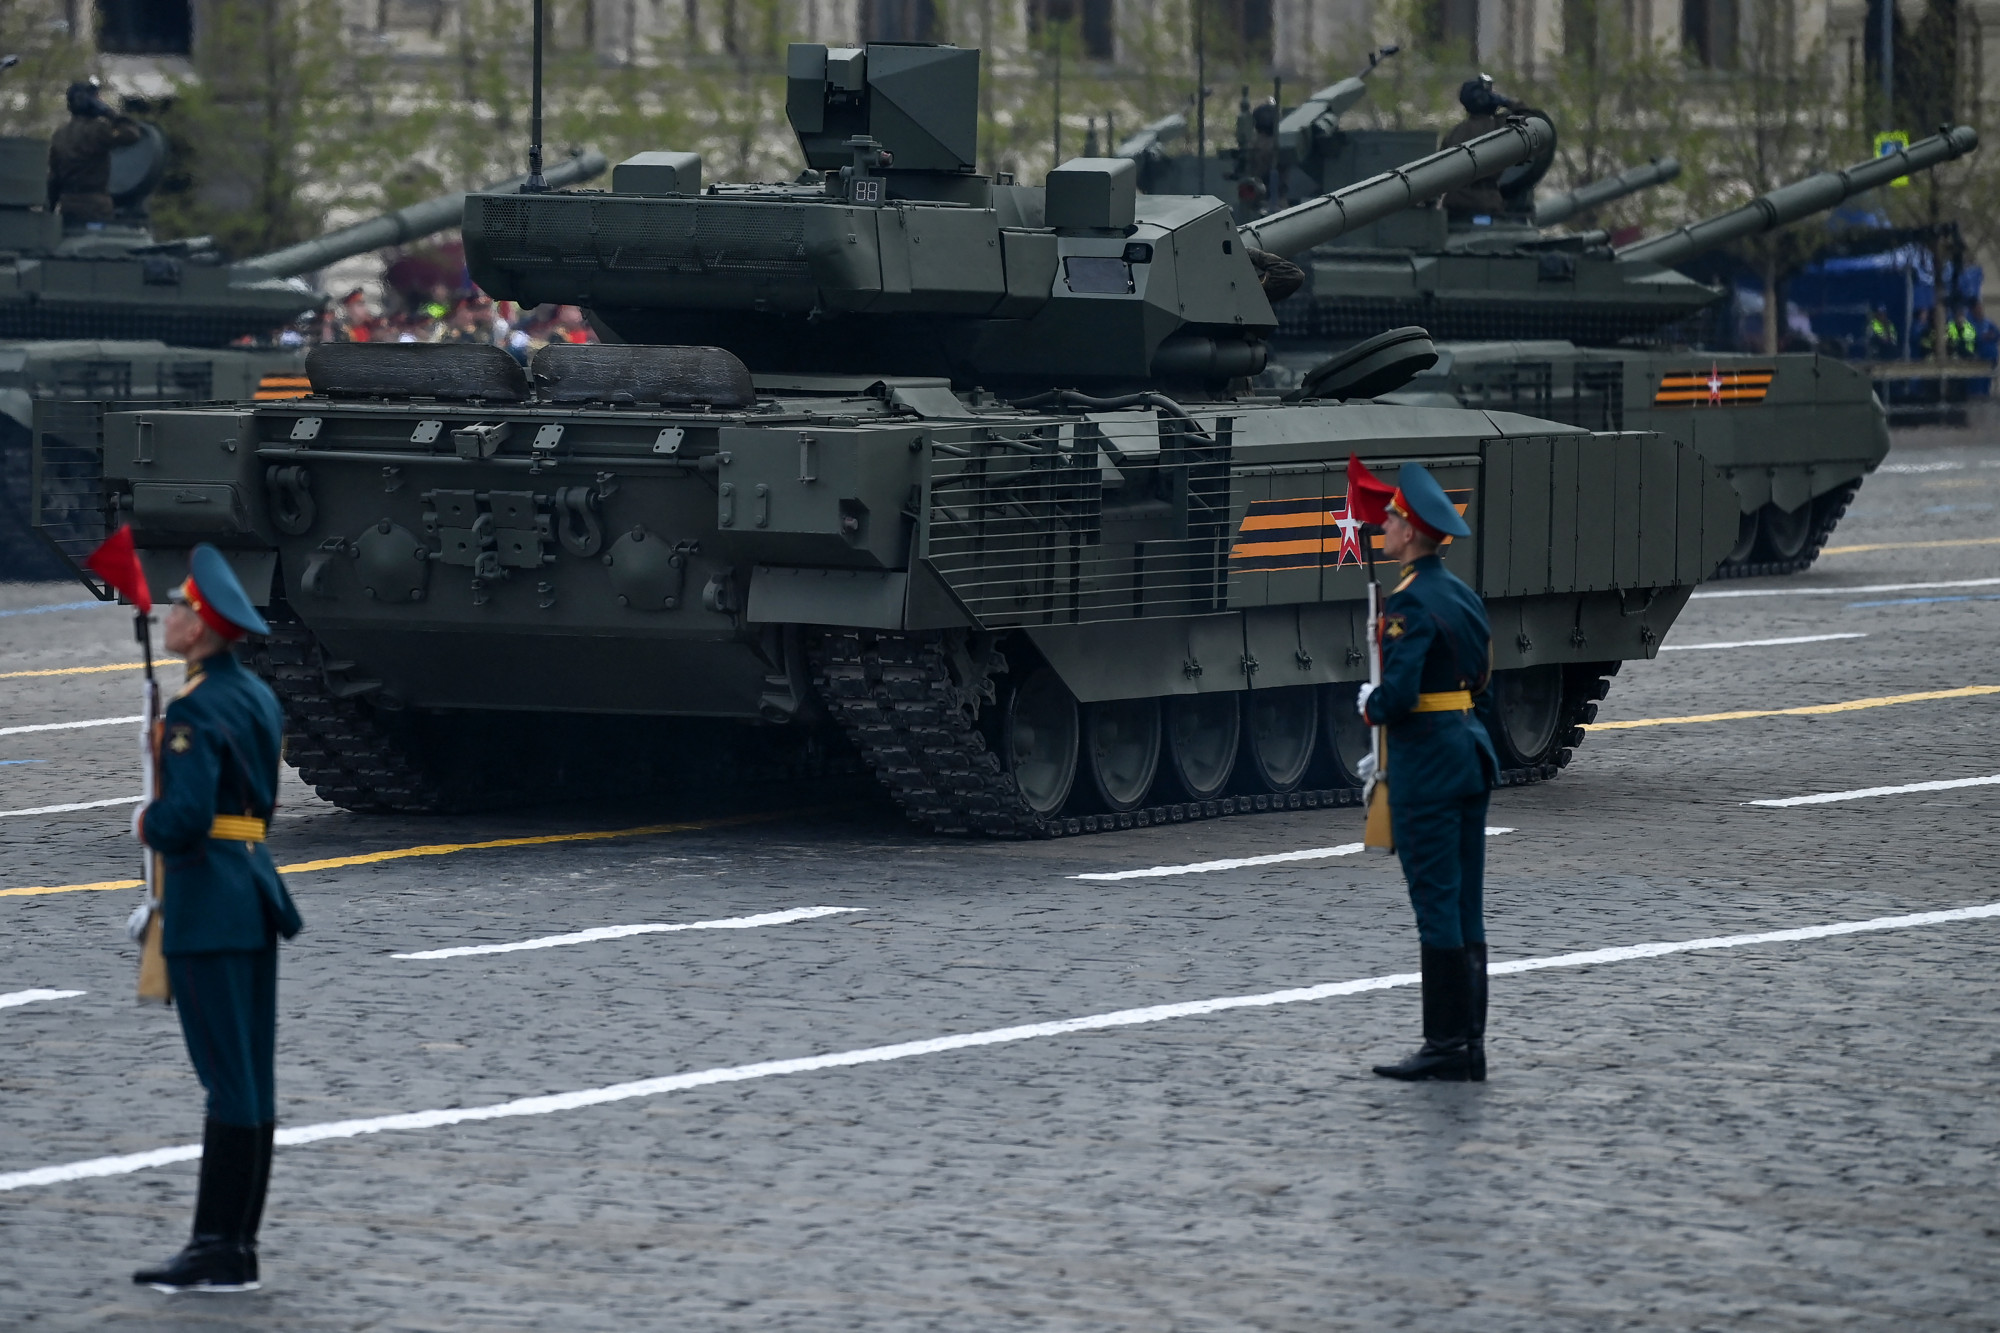 T14 Armata tankokat küldhettek az ukrán frontra az oroszok